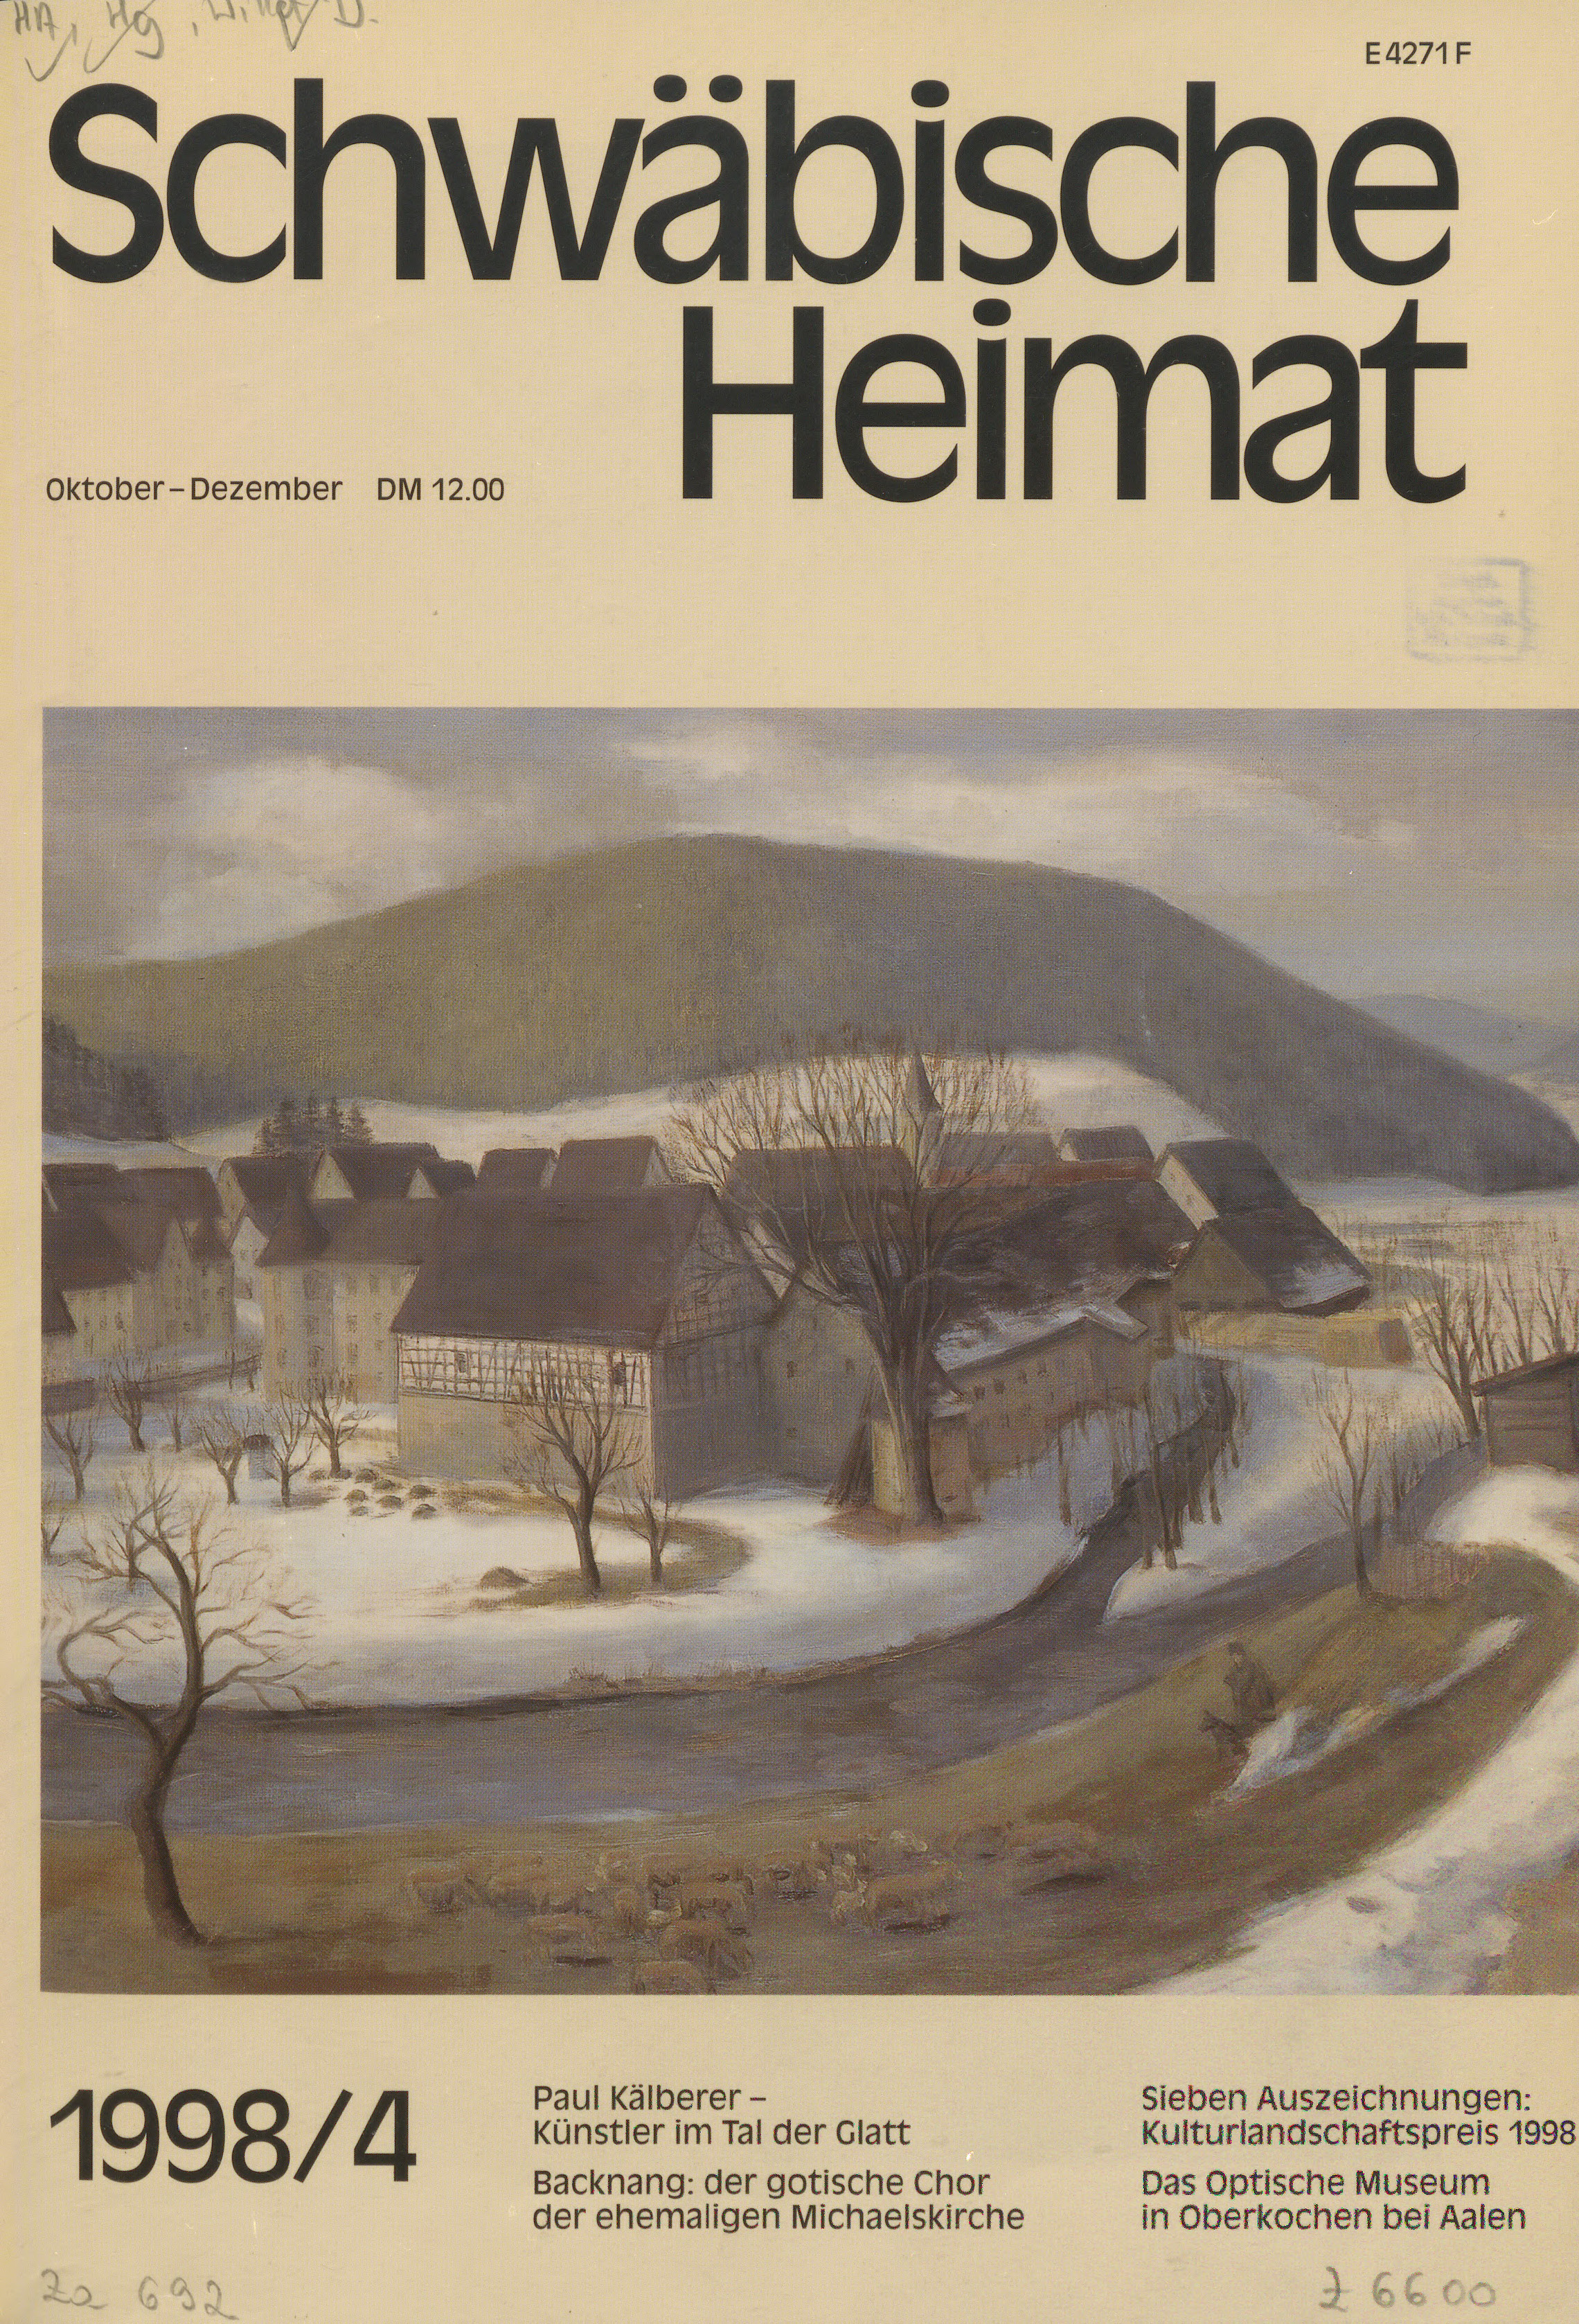                     Ansehen Bd. 49 Nr. 4 (1998): Schwäbische Heimat
                